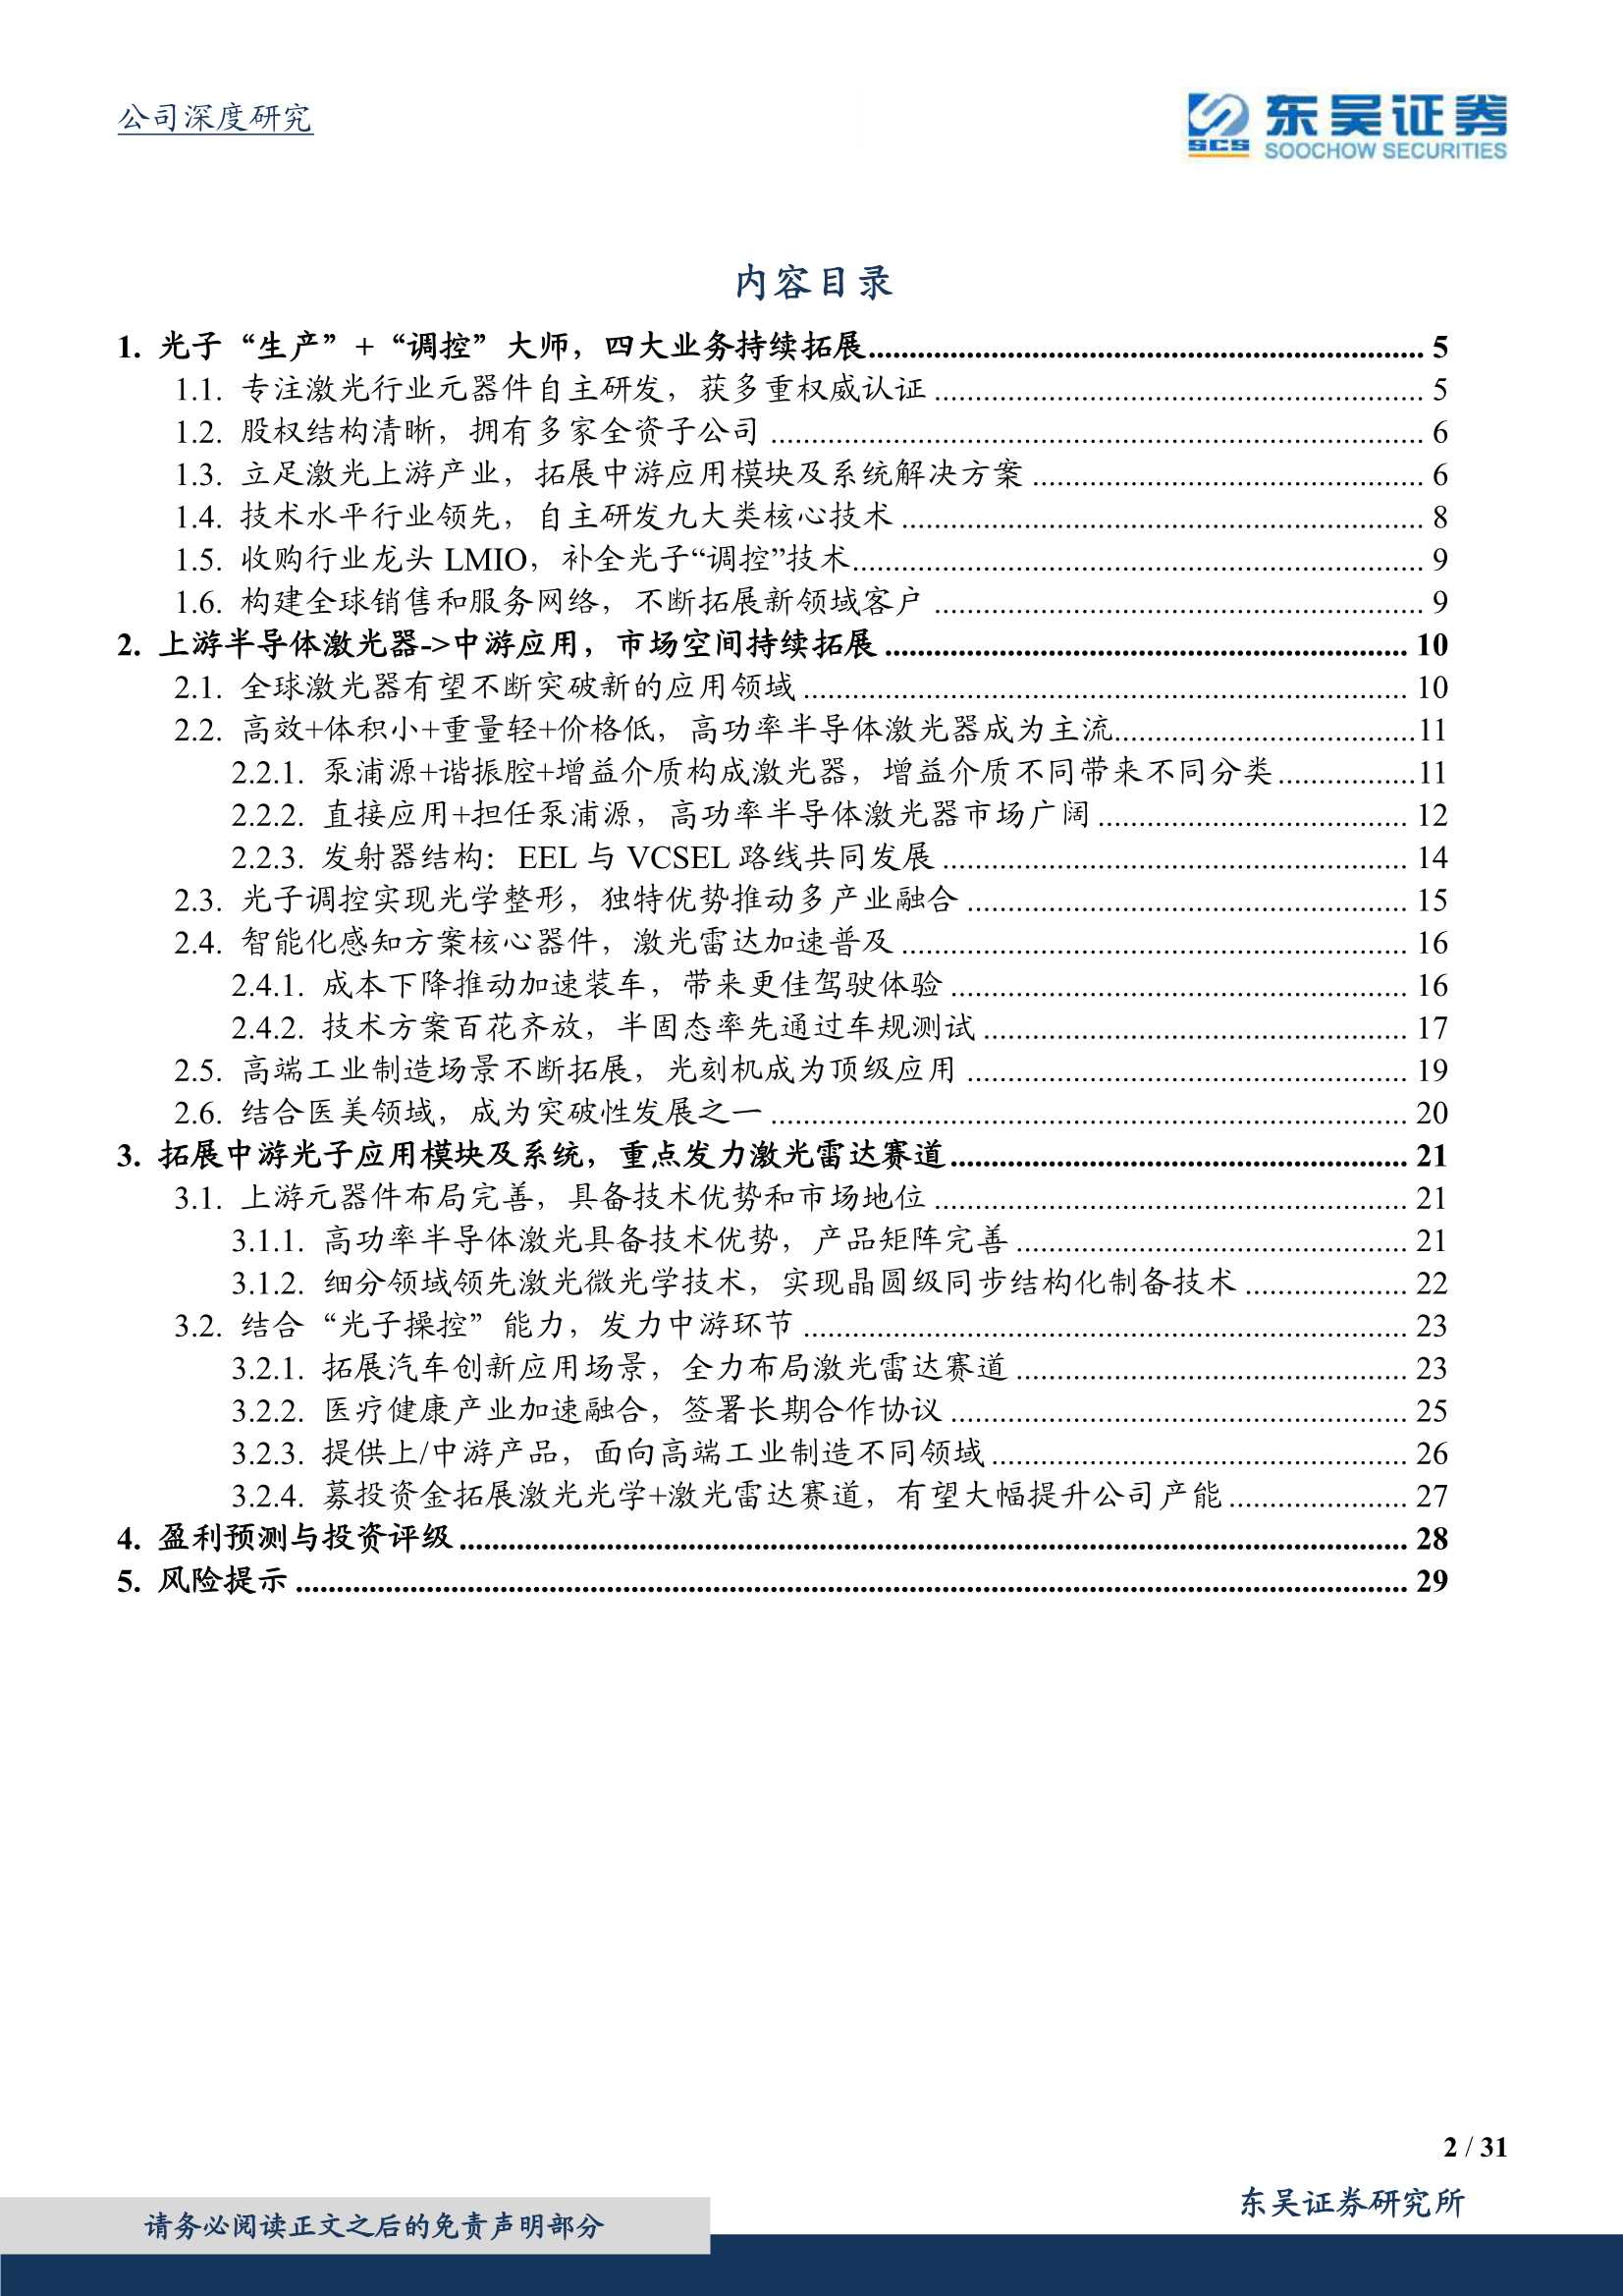 东吴证券-炬光科技-688167-激光雷达产业链核心受益标的-20220325-31页